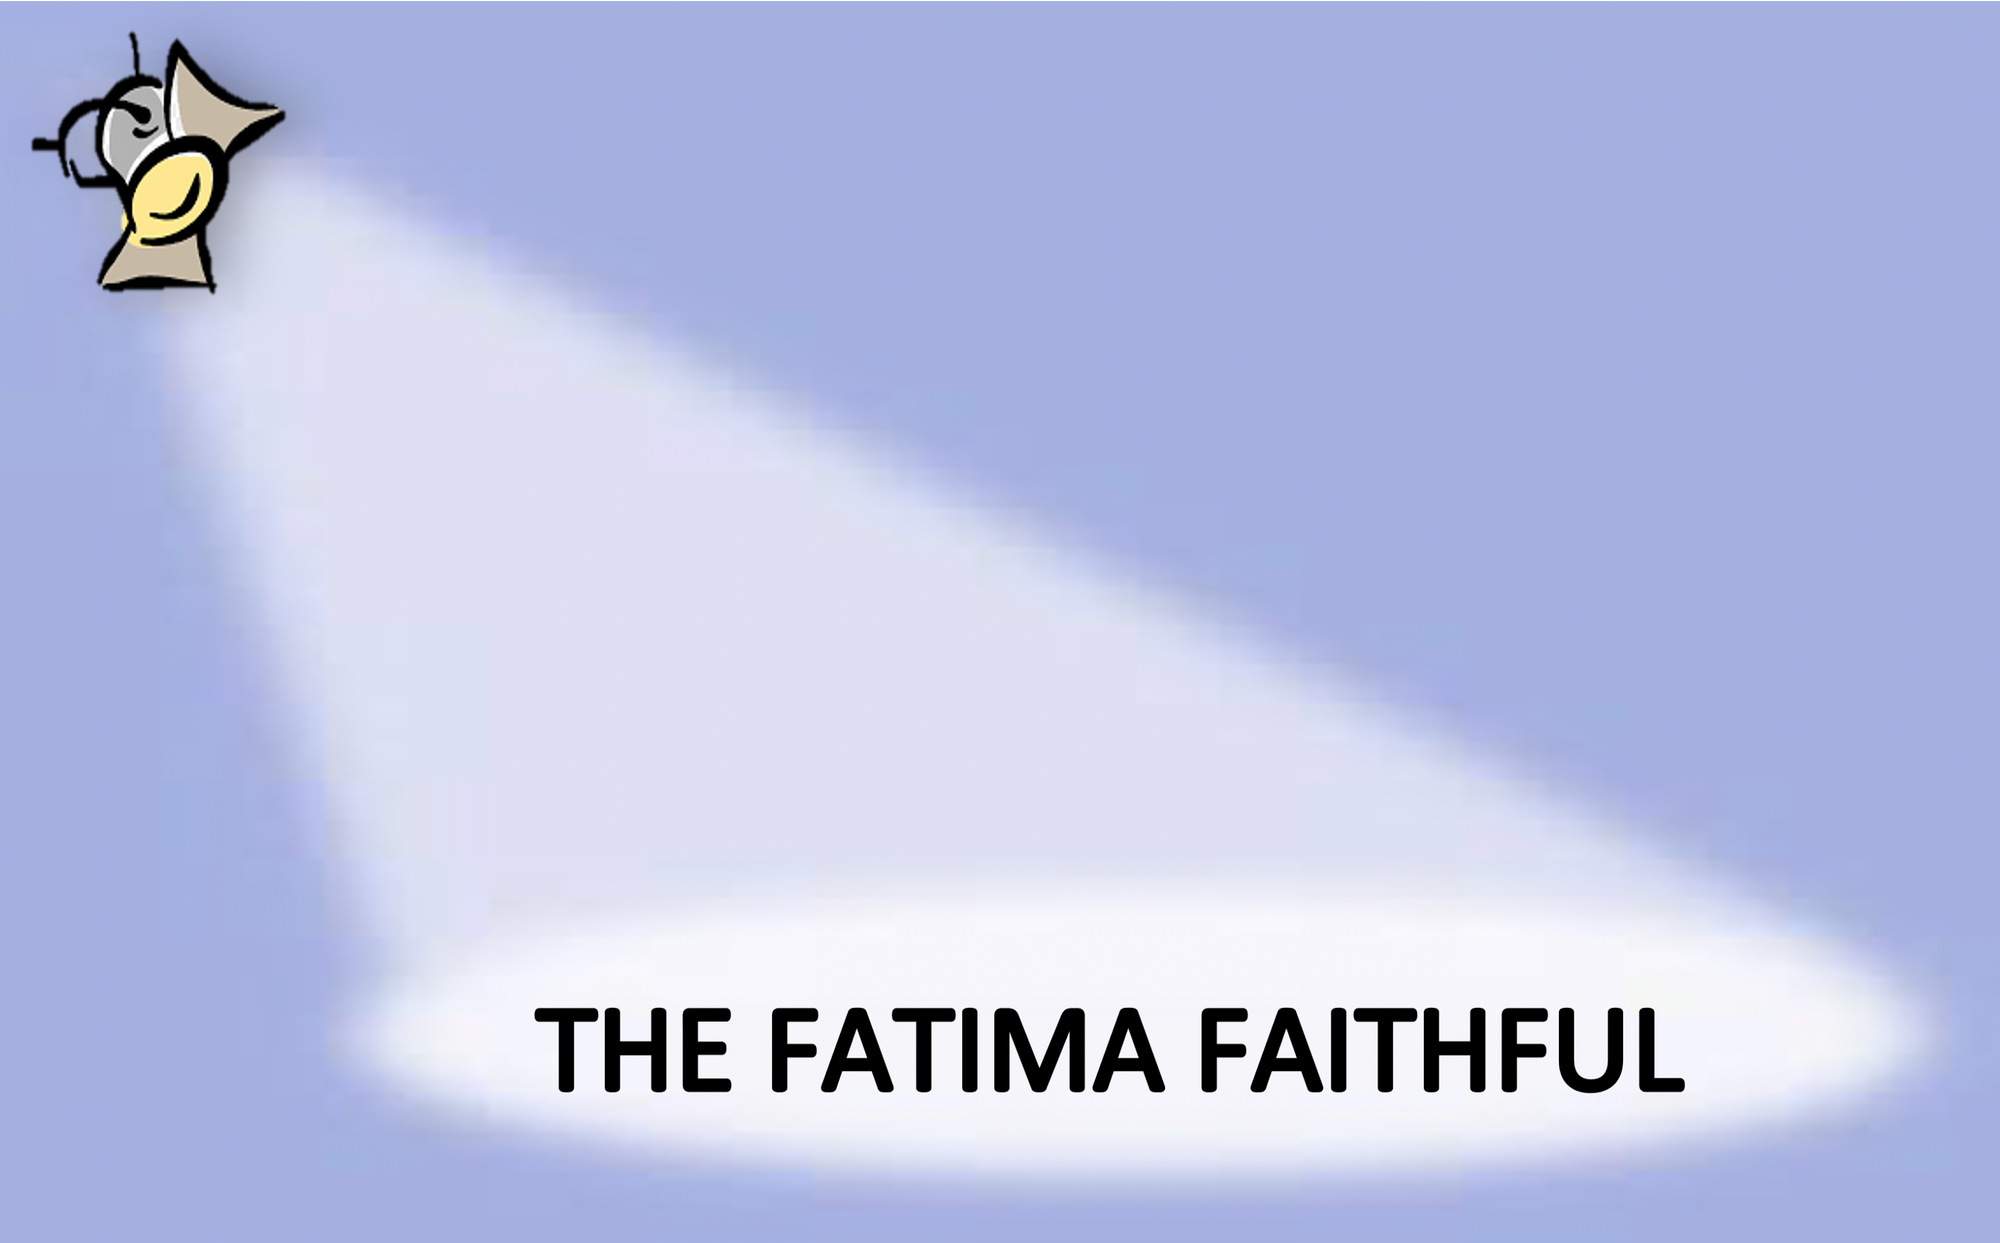 The Fatima Faithful for March 2021